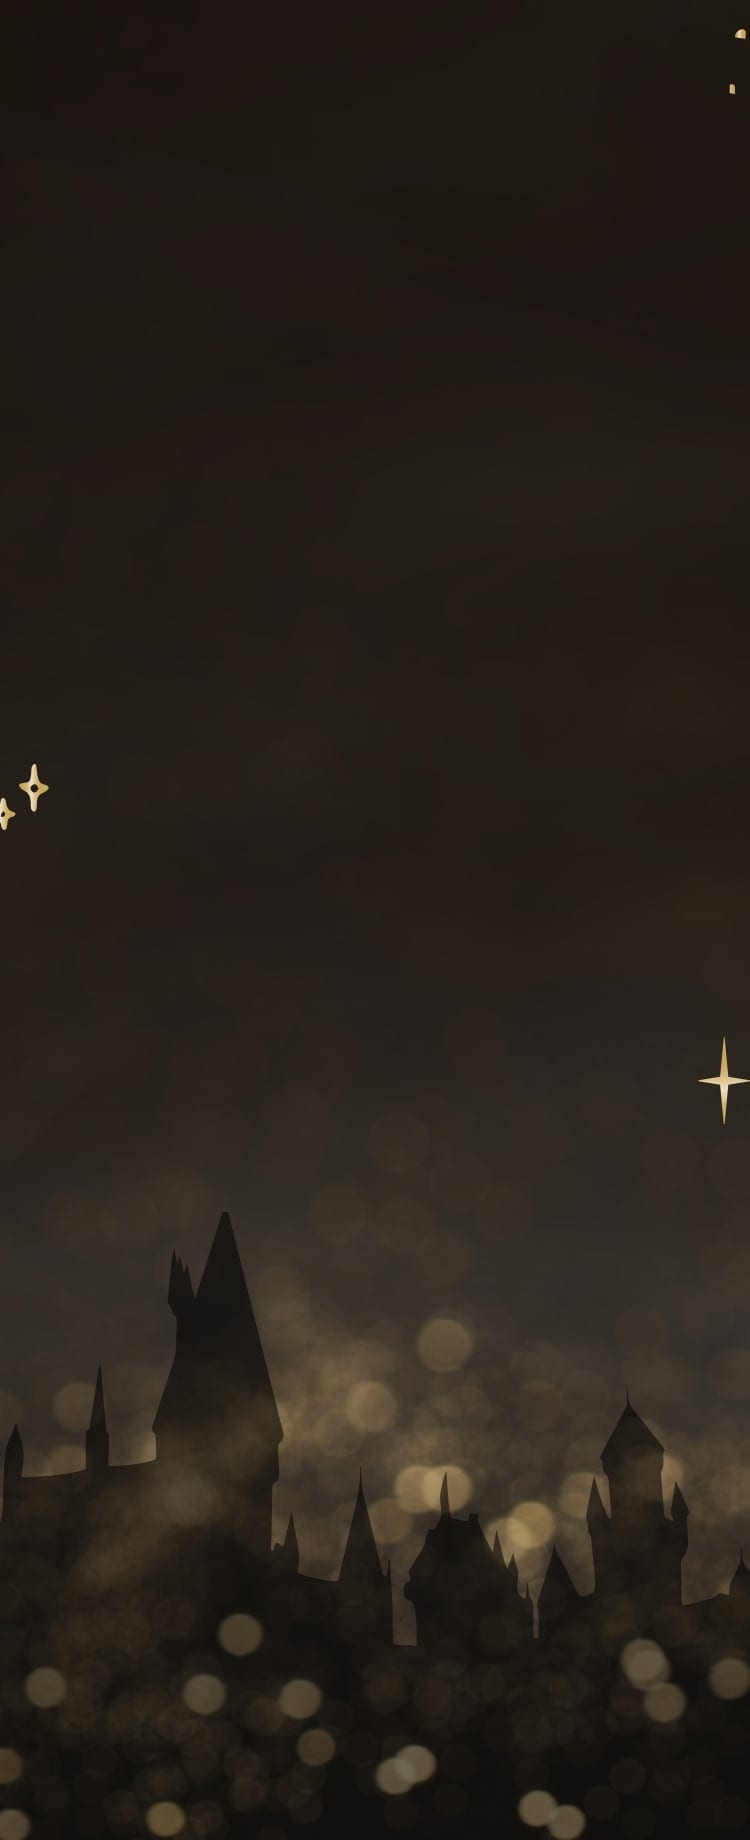 Un’immagine della sagoma del castello di Hogwarts circondato da stelle scintillanti.